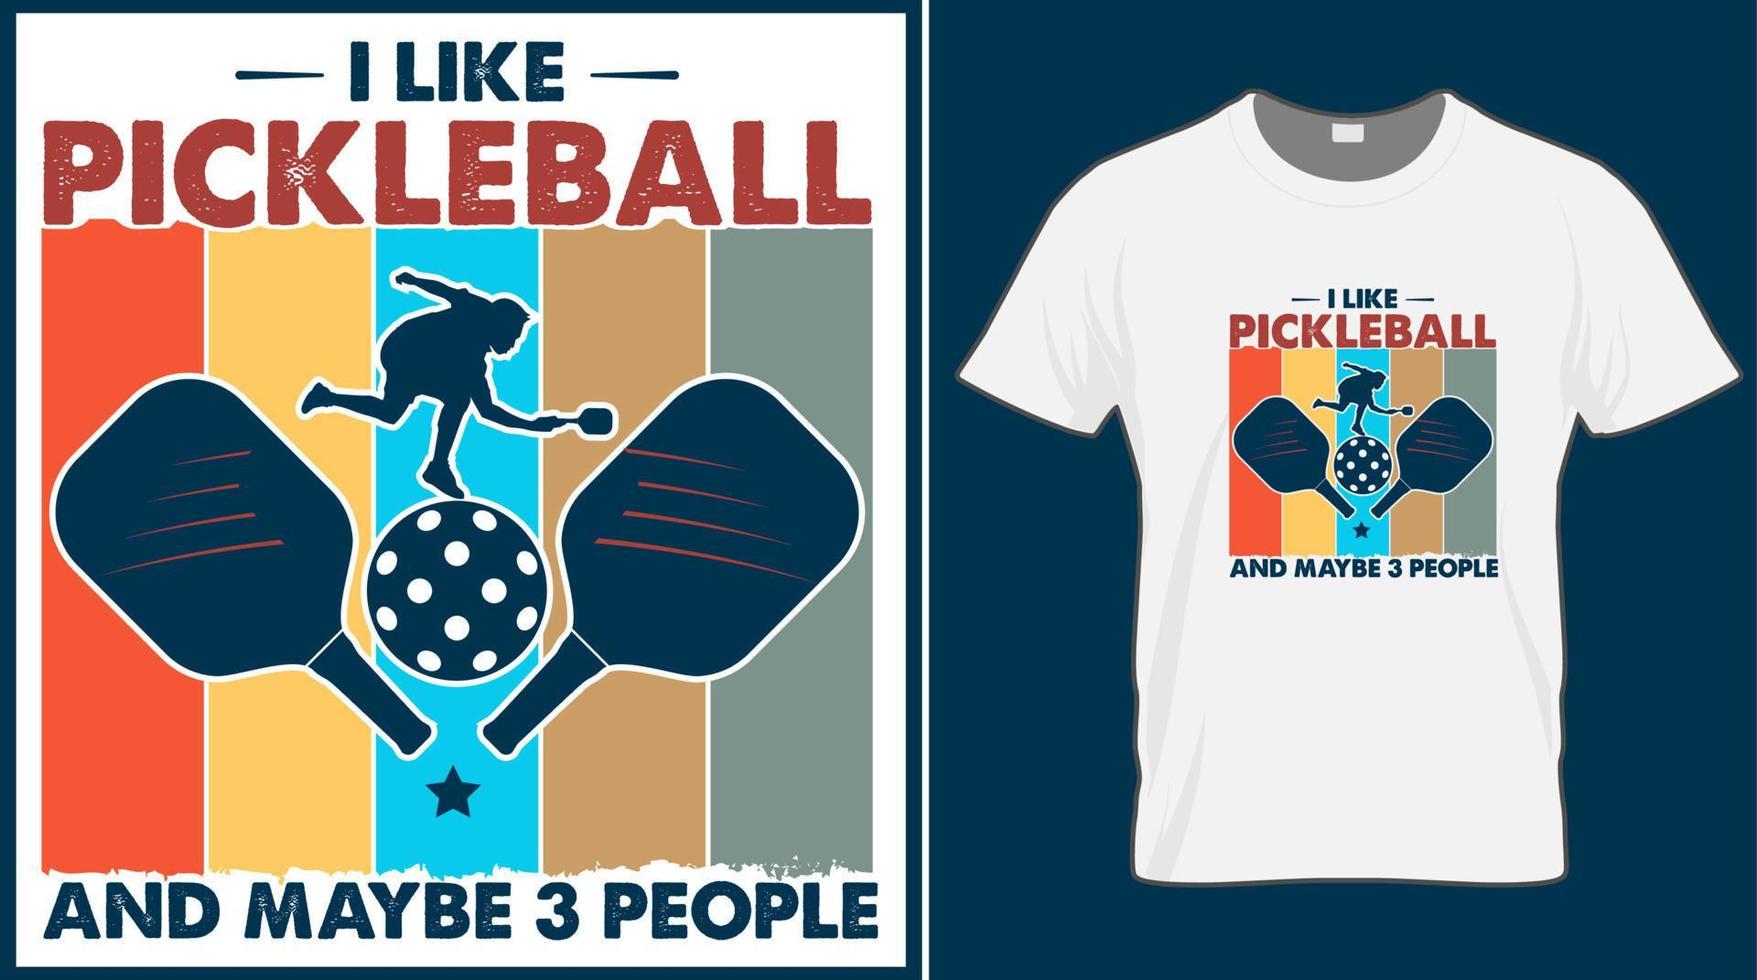 j'aime le pickleball et peut être 3 personnes, disant la conception de t-shirt vectoriel. conceptions de typographie de citation de boule de cornichon. illustration imprimée pour carte de sport, casquette, t-shirt, tasse, bannière, affiche, arrière-plan. vecteur